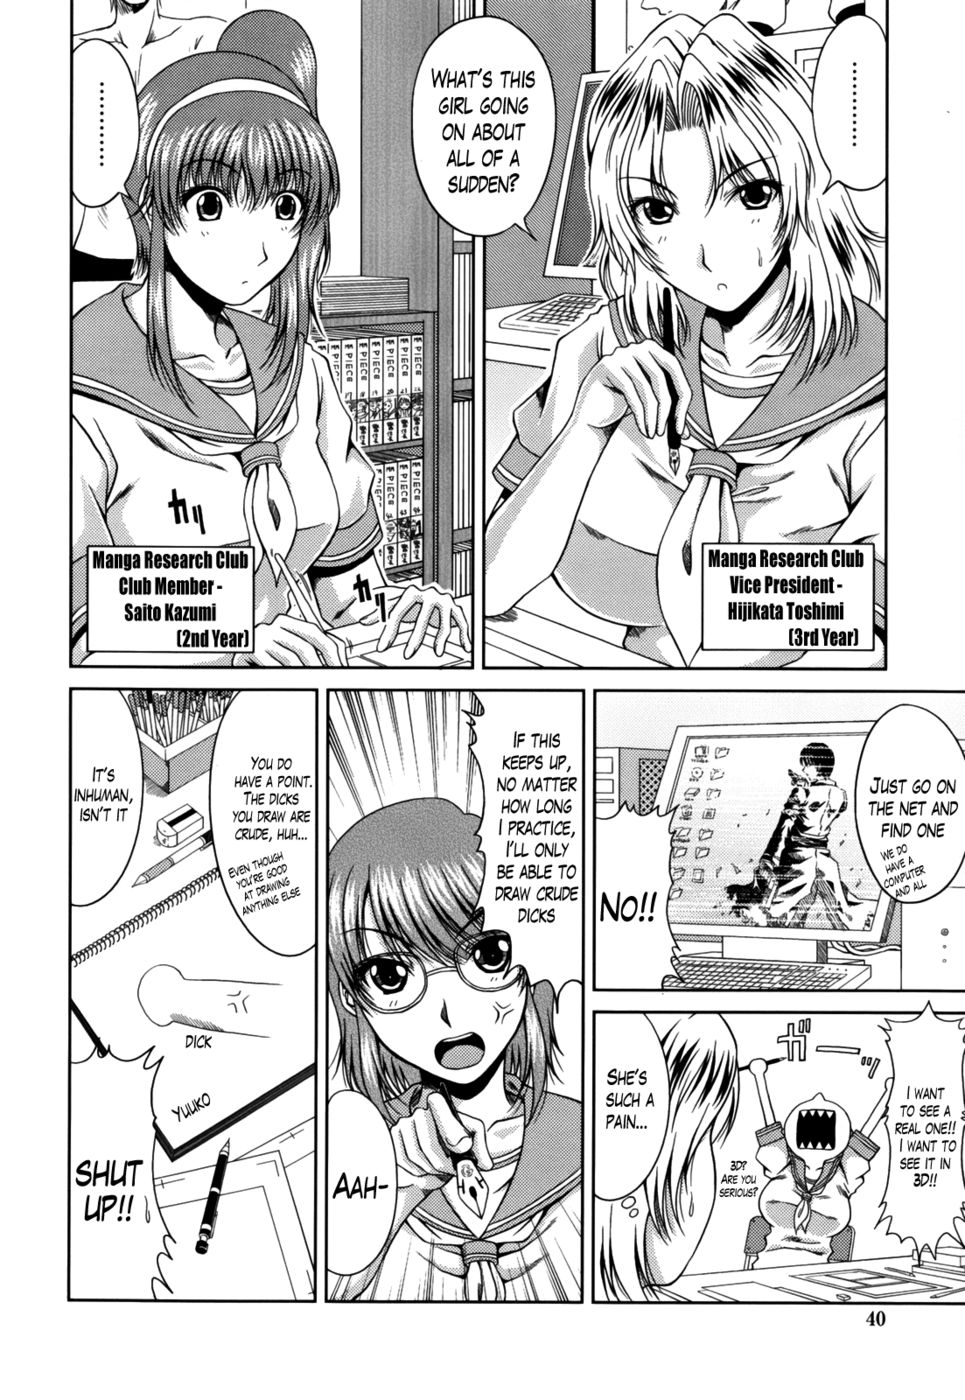 Hentai Manga Comic-Love Kachuu-Chapter 3-4-Manga Research Triangle-2